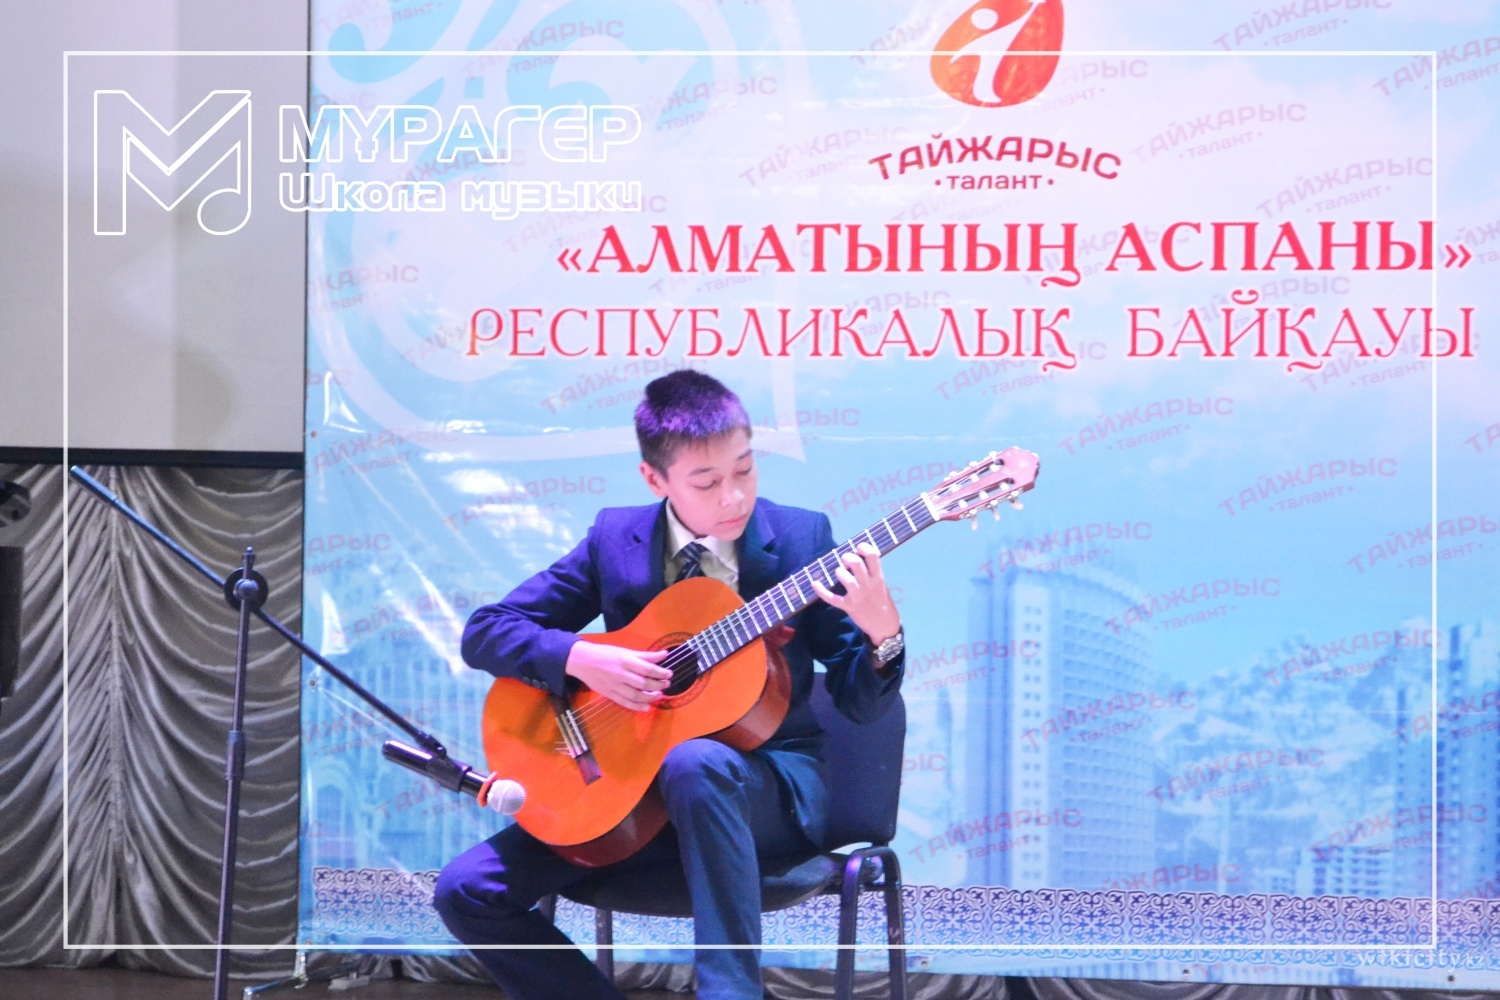 Фото Murager Music School - Алматы. Наши победители Гран-при в  международном конкурсе по гитаре